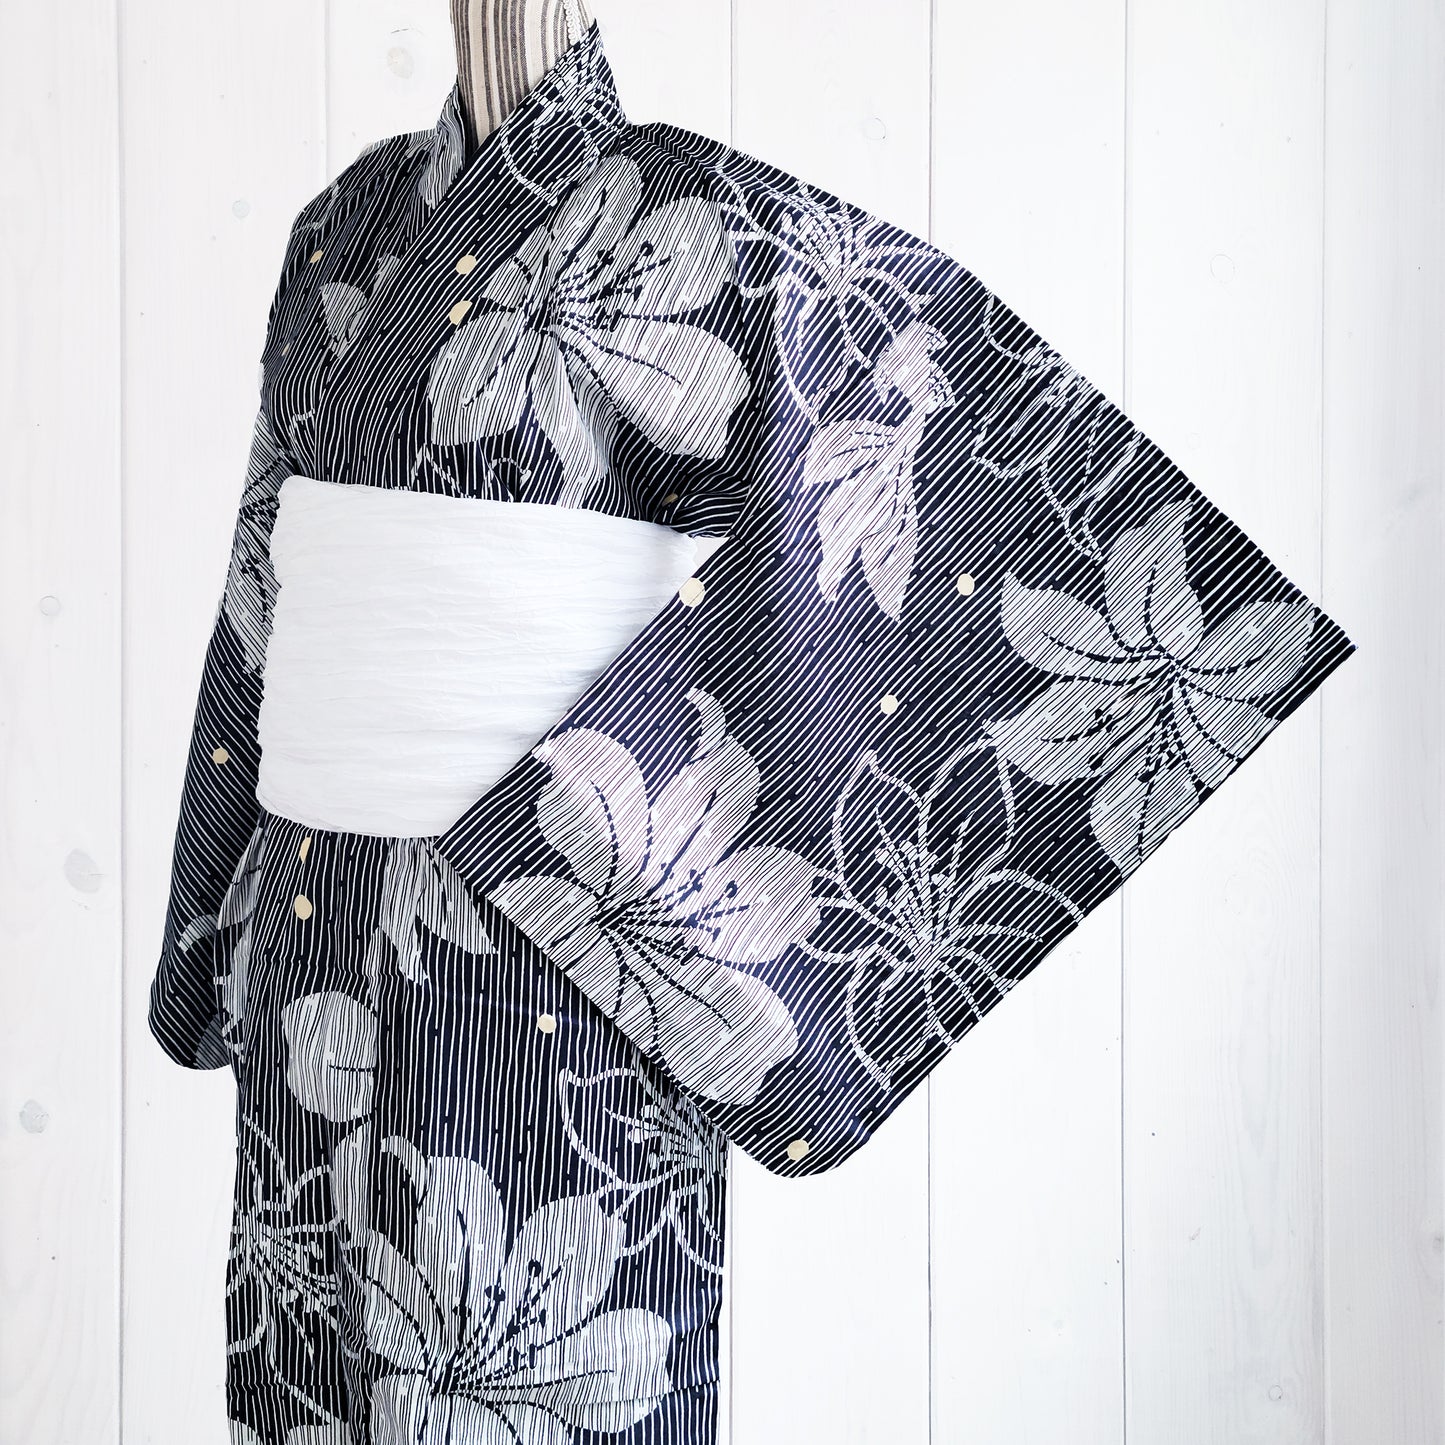 Women's Japanese Traditional Yukata Kimono - Floral Black and White Stripes